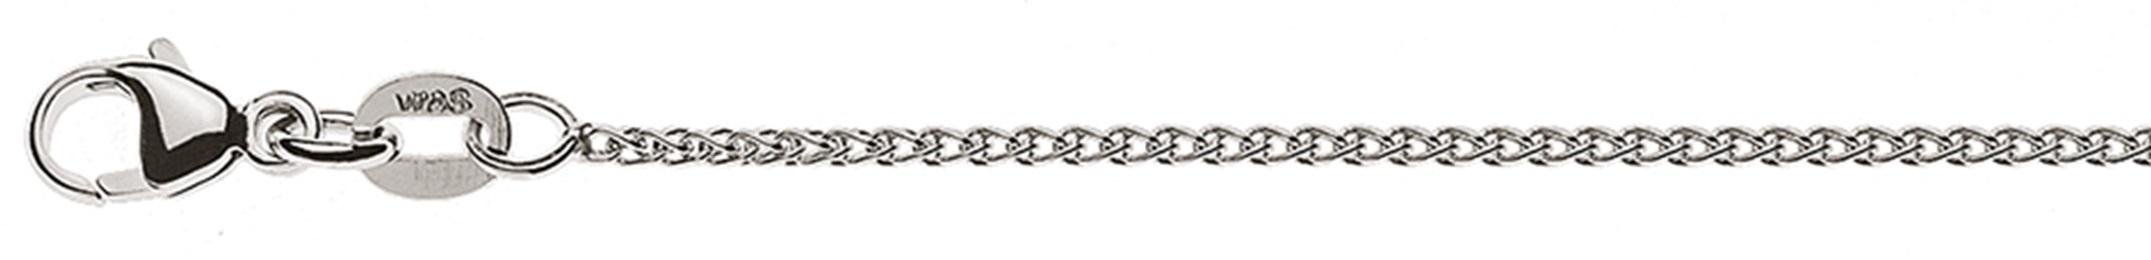 AURONOS Style Halskette Weissgold 9K Zopfkette 42cm 1.2mm